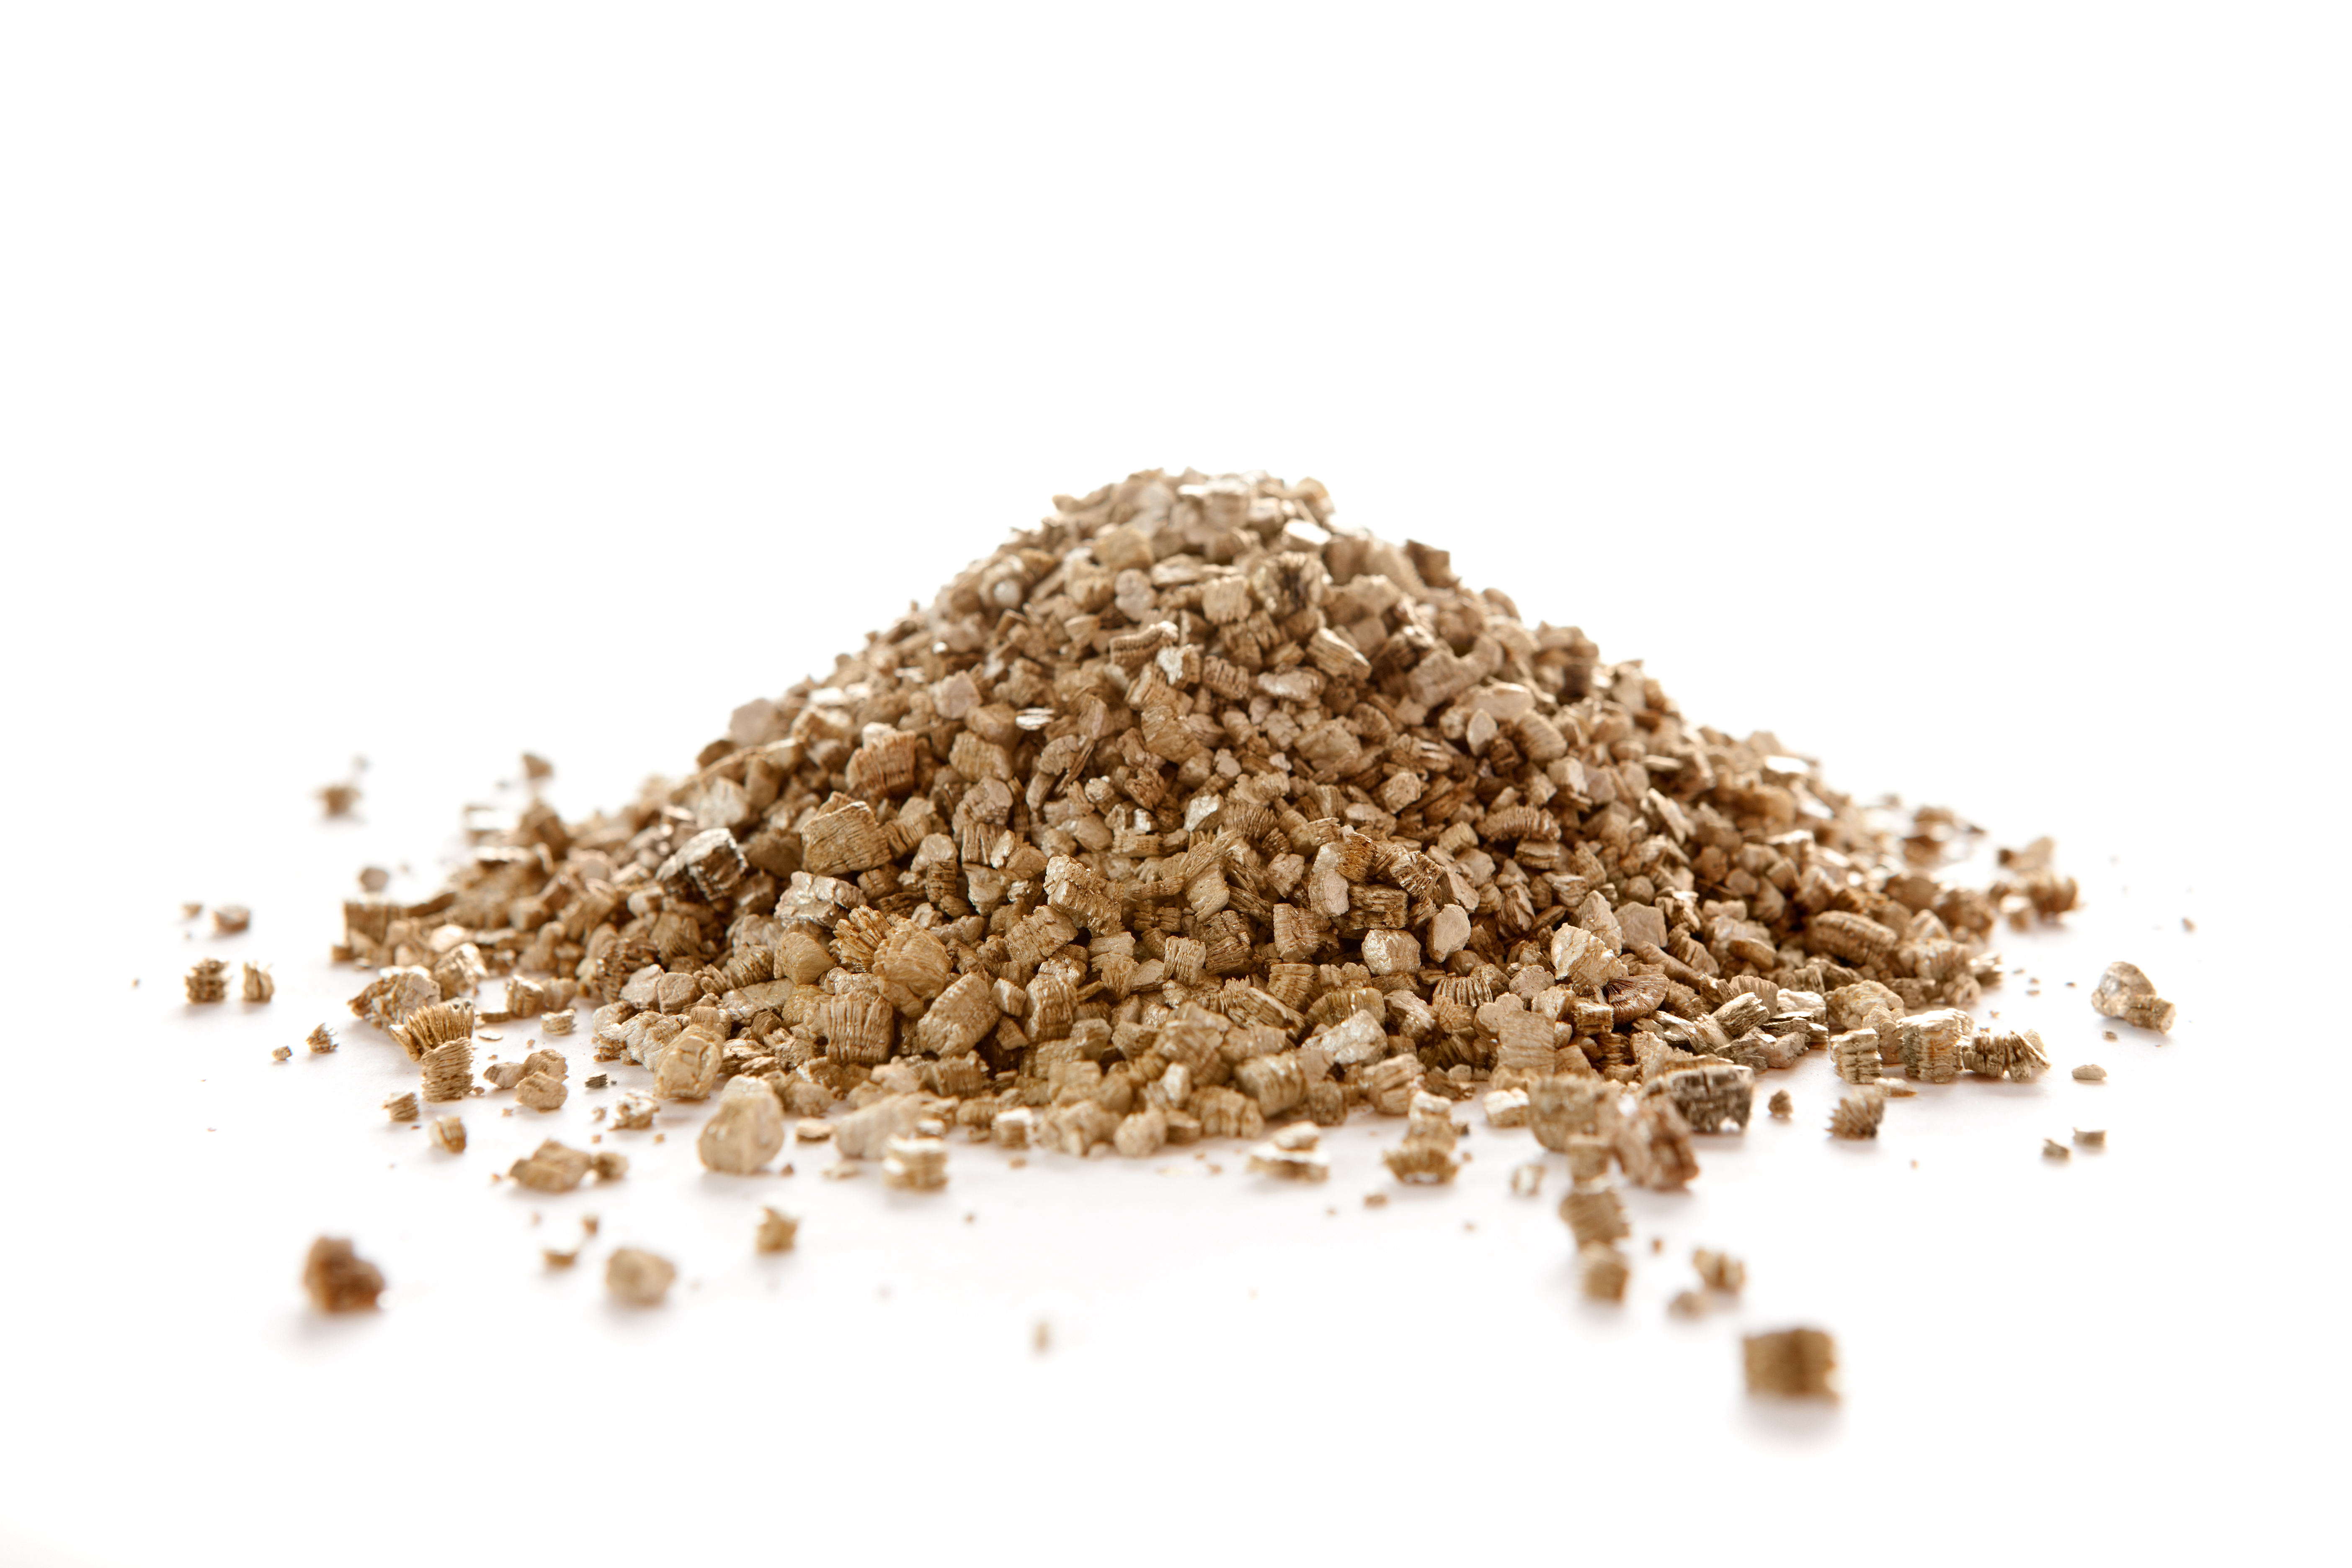 Achetez une maison contaminée de vermiculite comme investissement !